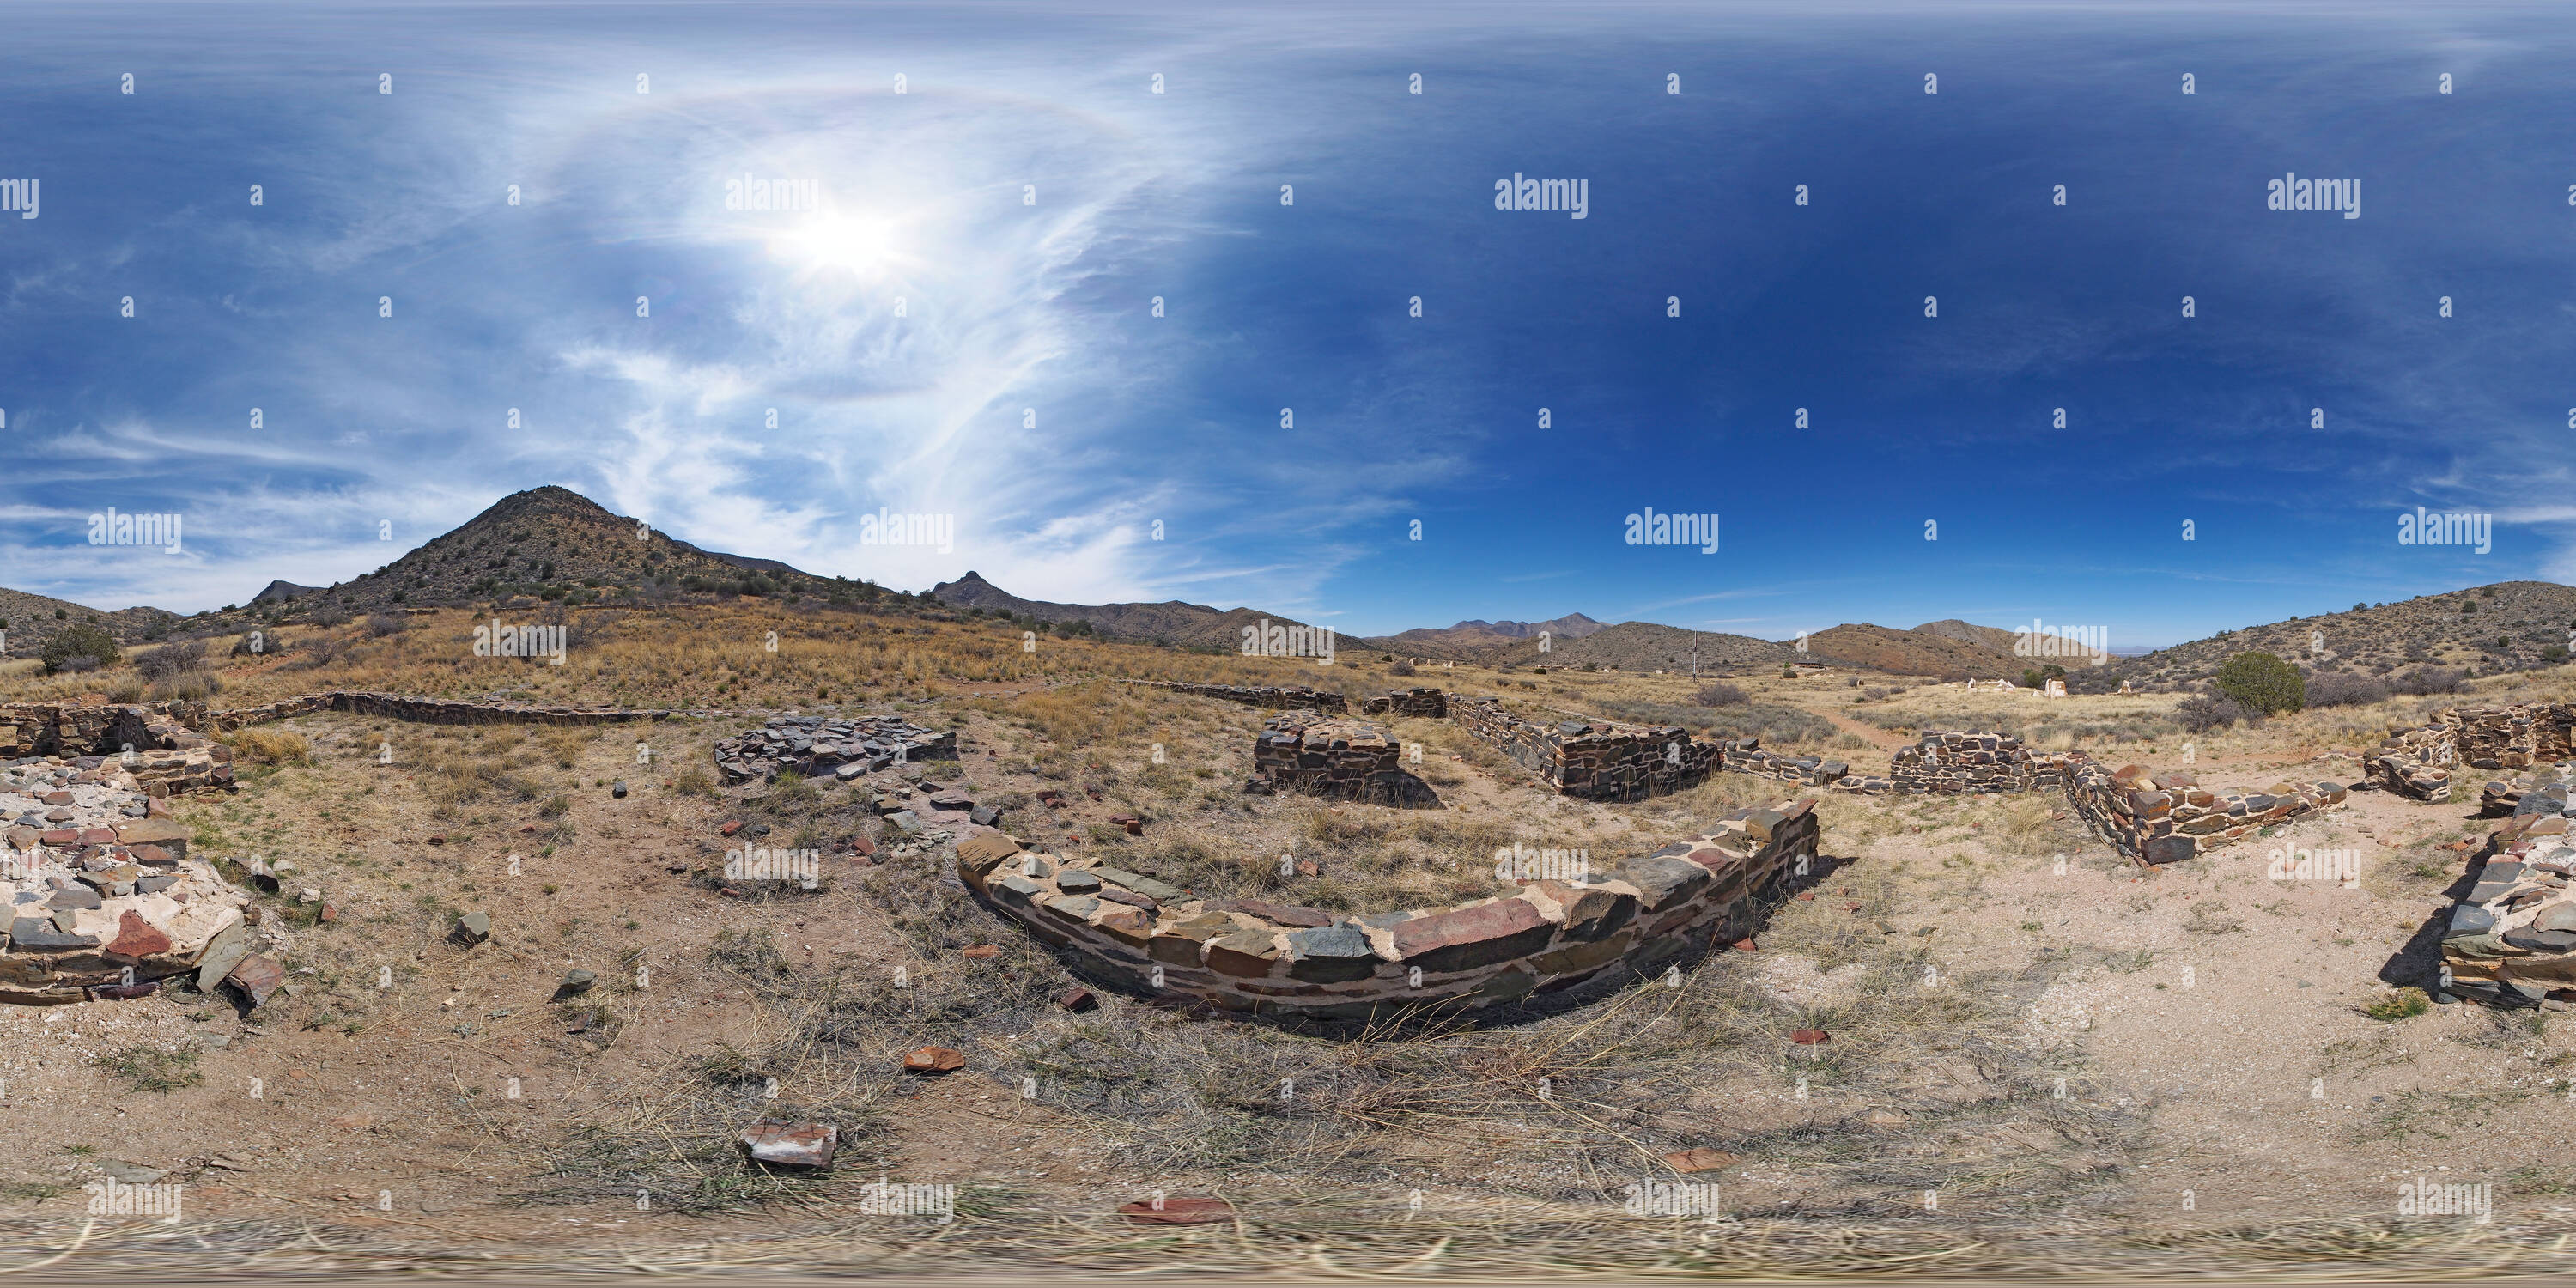 Visualizzazione panoramica a 360 gradi di Fondamenti di una volta gran comandante's house a Fort Bowie